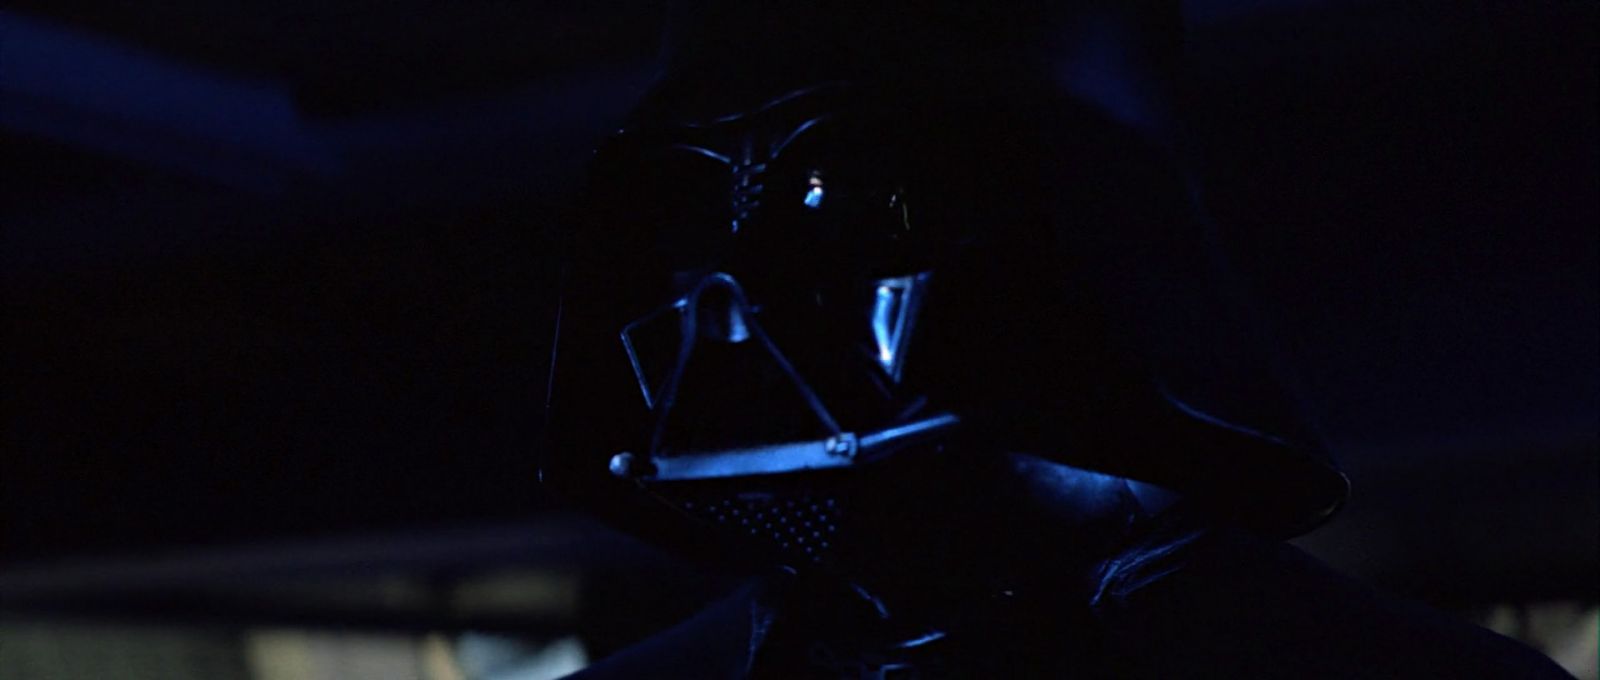 ROTJ-Vader-13241.jpg